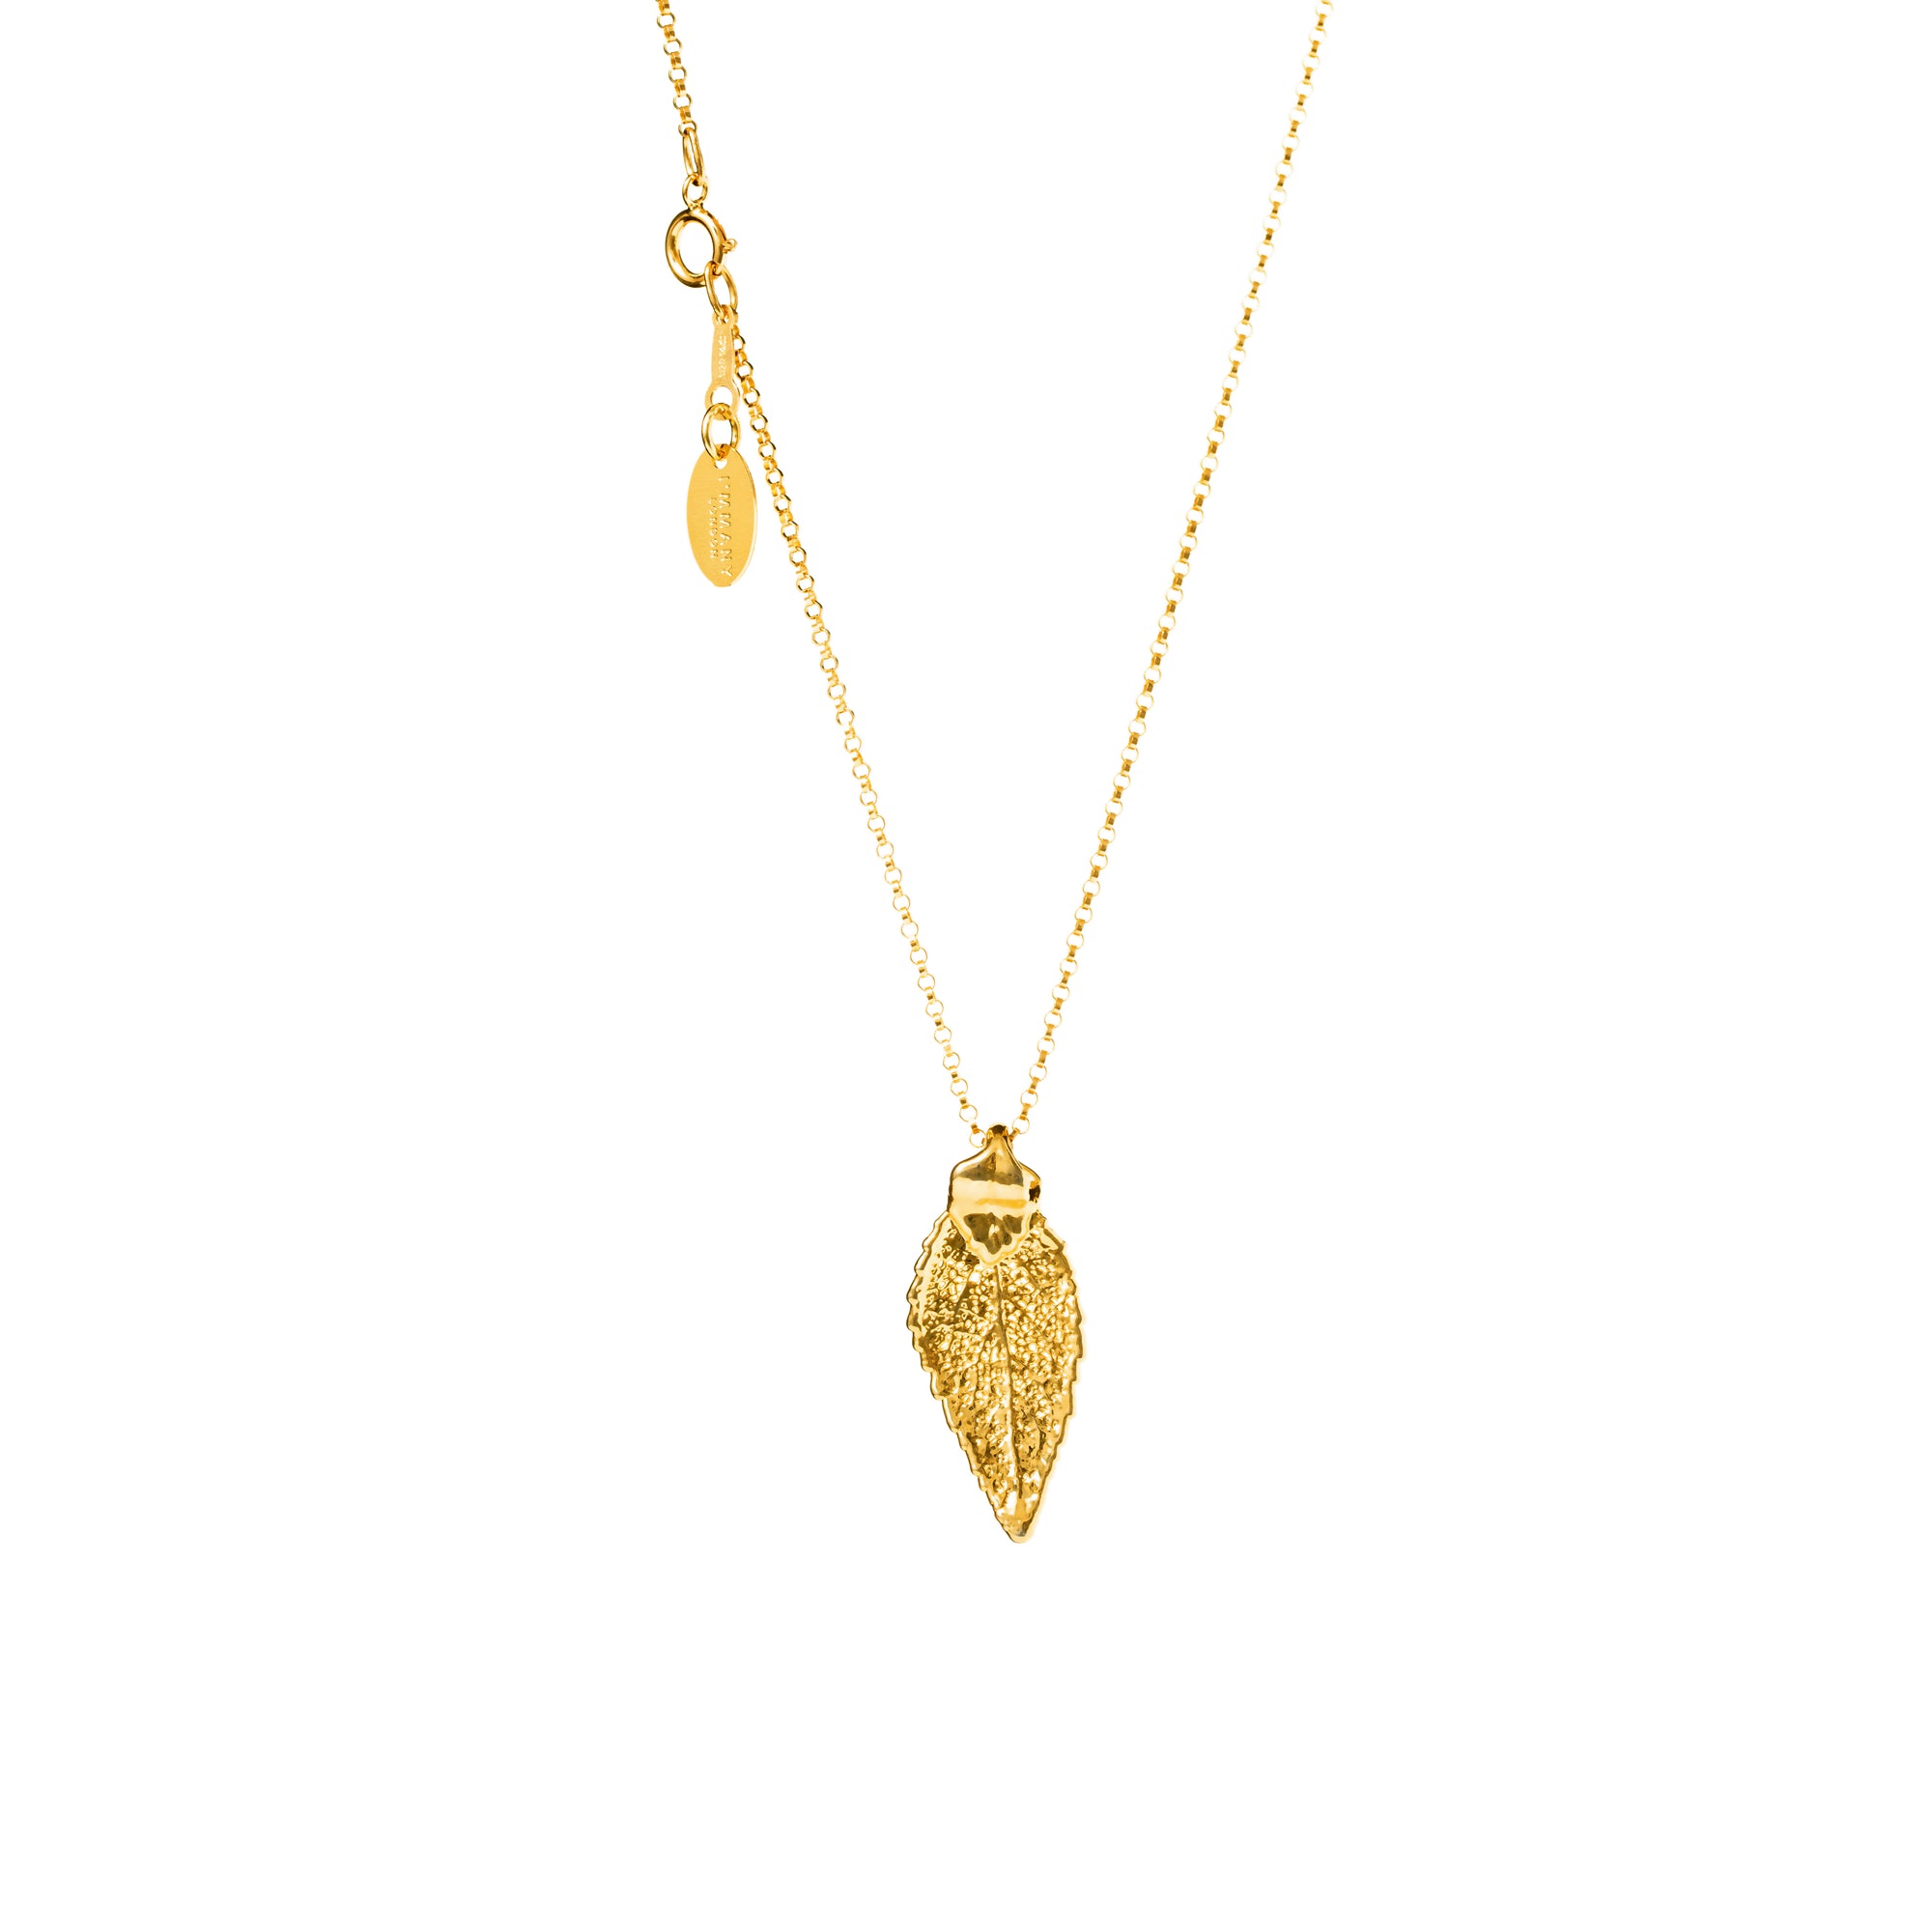 *REAL LEAVES* Be-leaf Gold-filled Necklace w/24k Gold Leaf Charm